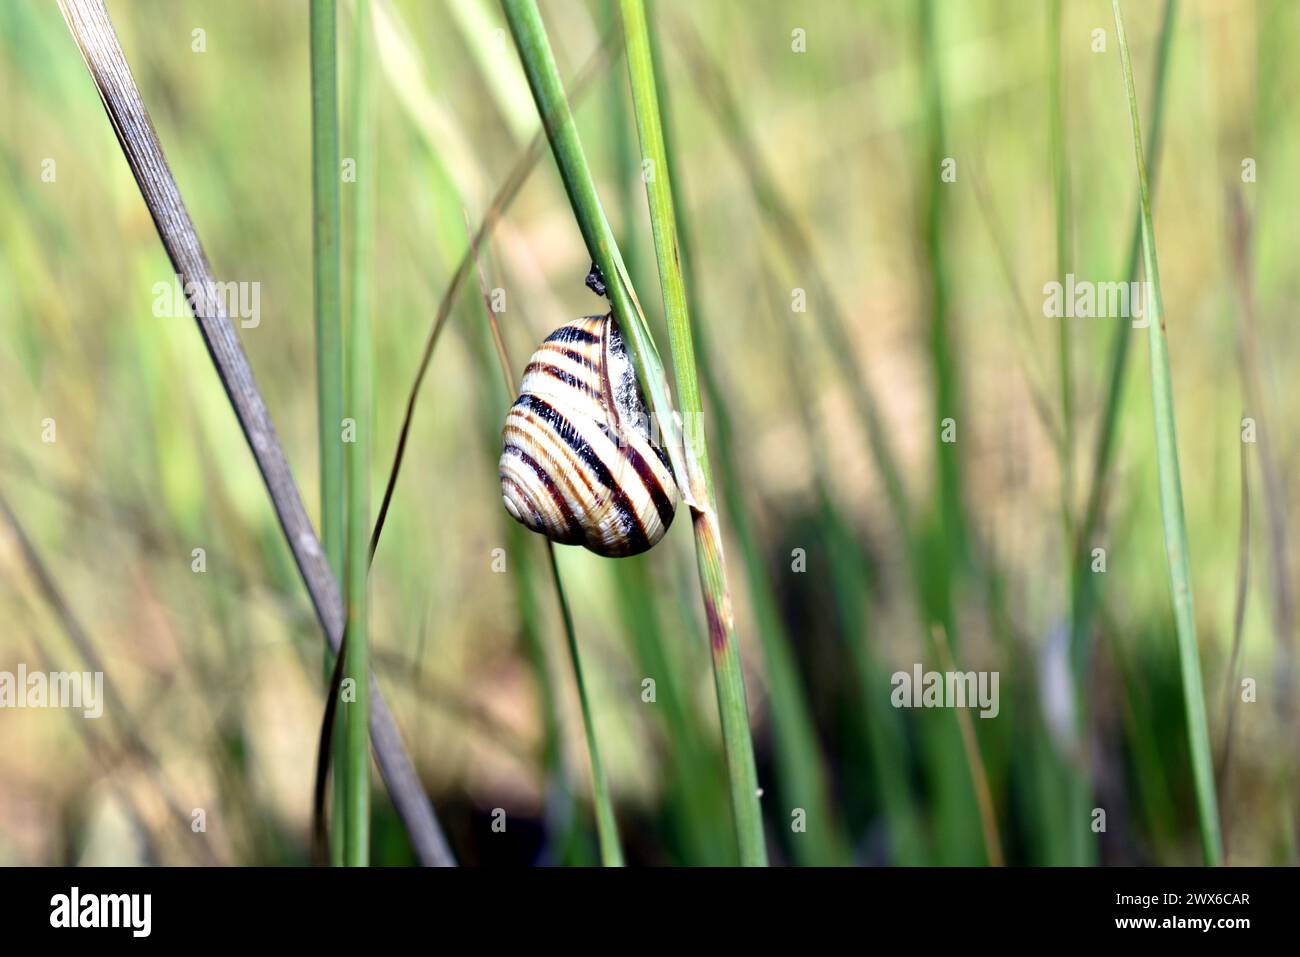 Un escargot avec une coquille rayée se trouve sur l'herbe. Banque D'Images